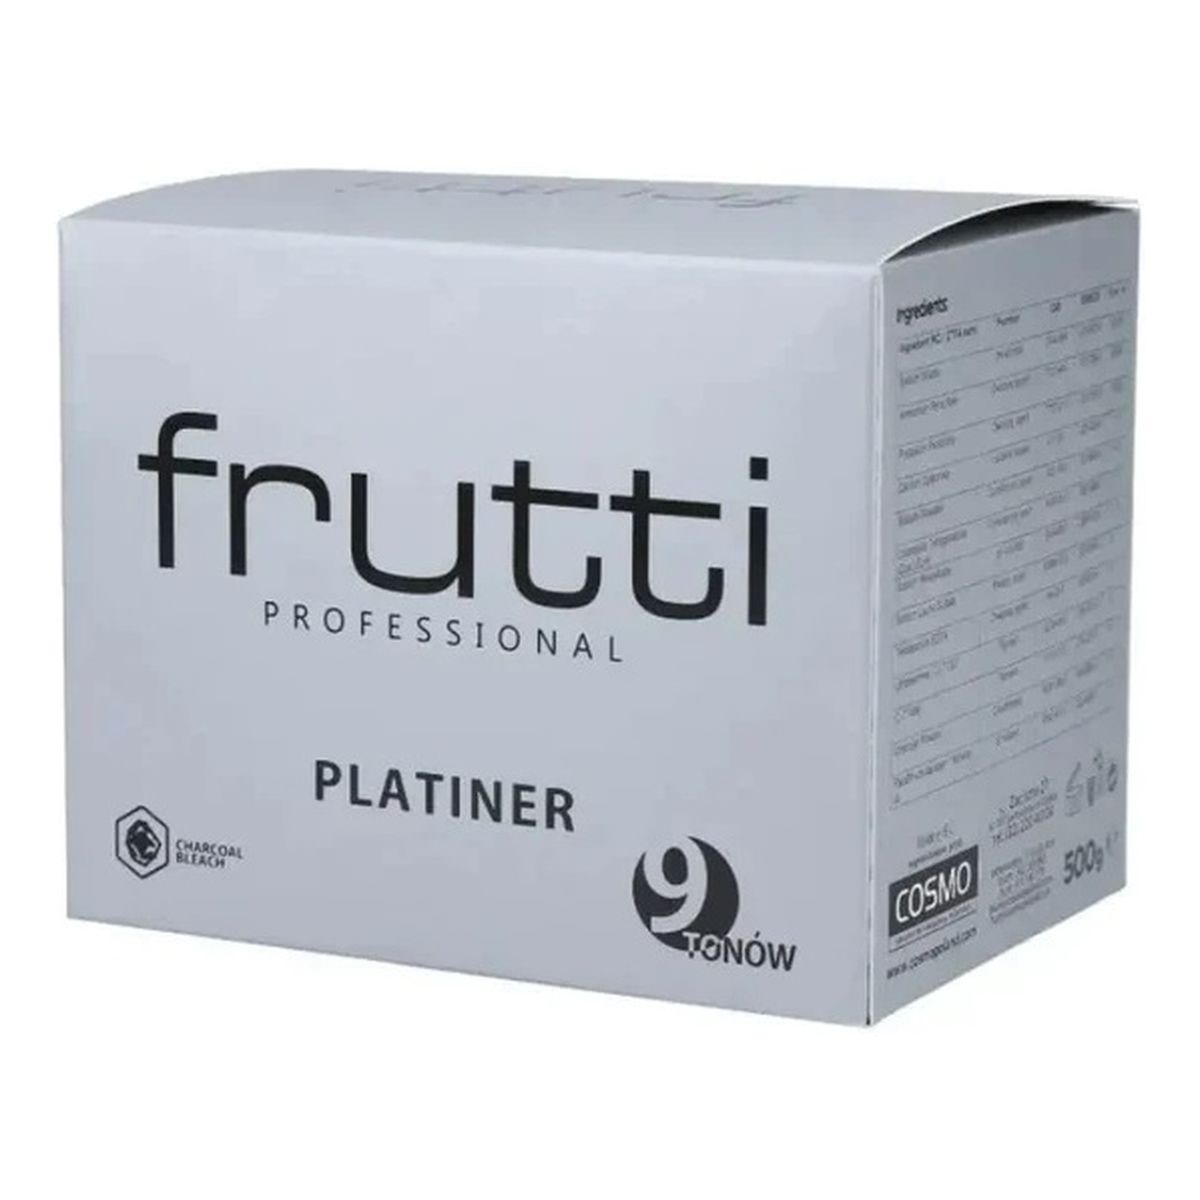 Frutti Professional Platiner bezpyłowy rozjaśniacz do włosów 9 tonów 500g 500g